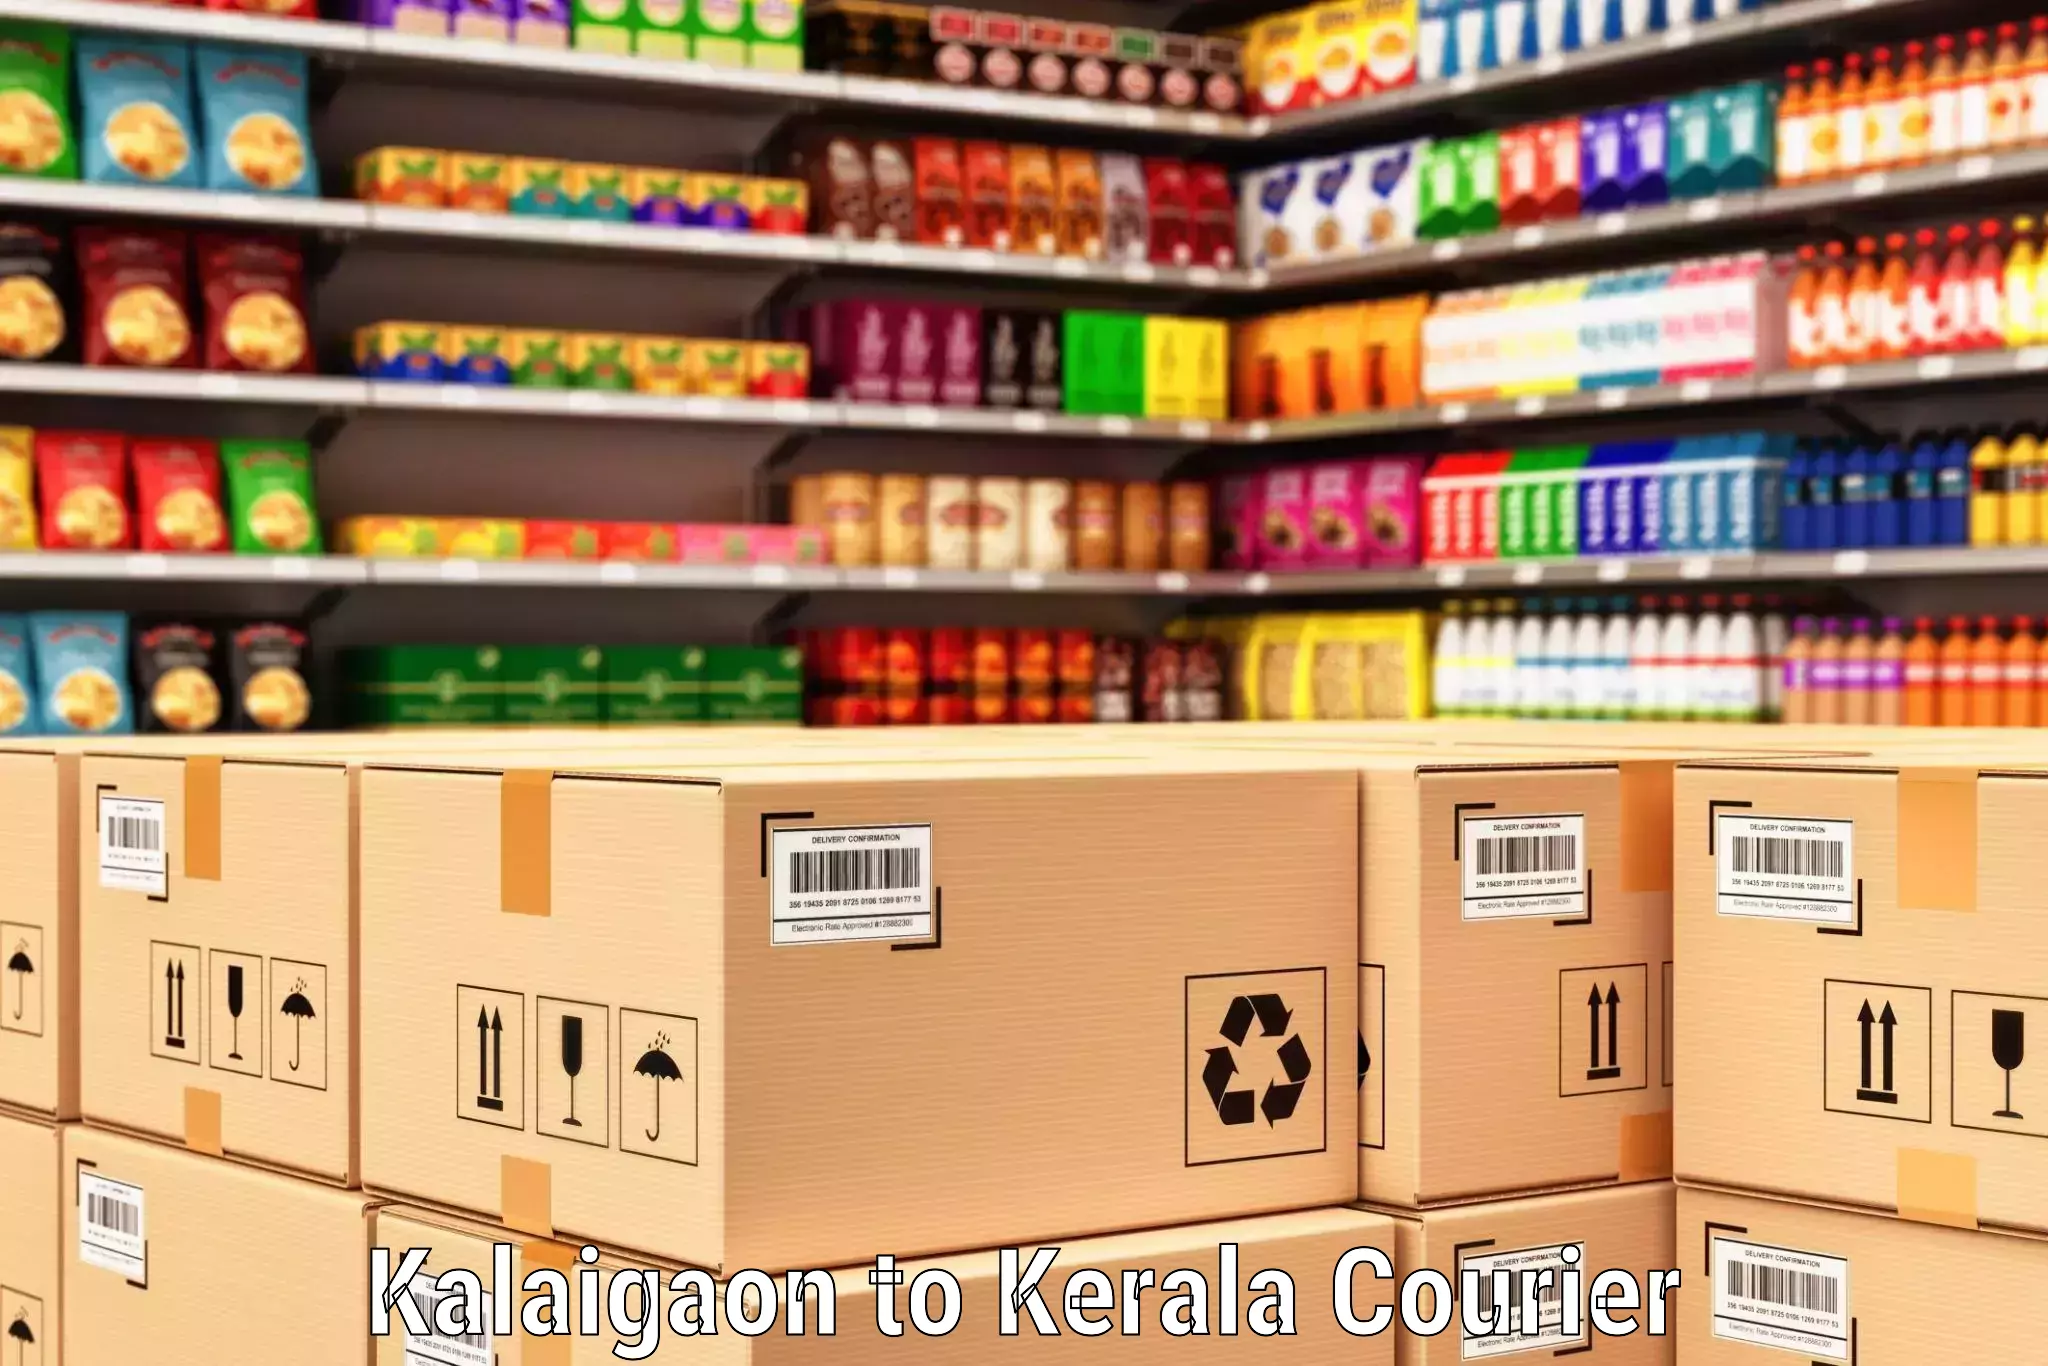 Express courier capabilities Kalaigaon to Calicut University Malappuram